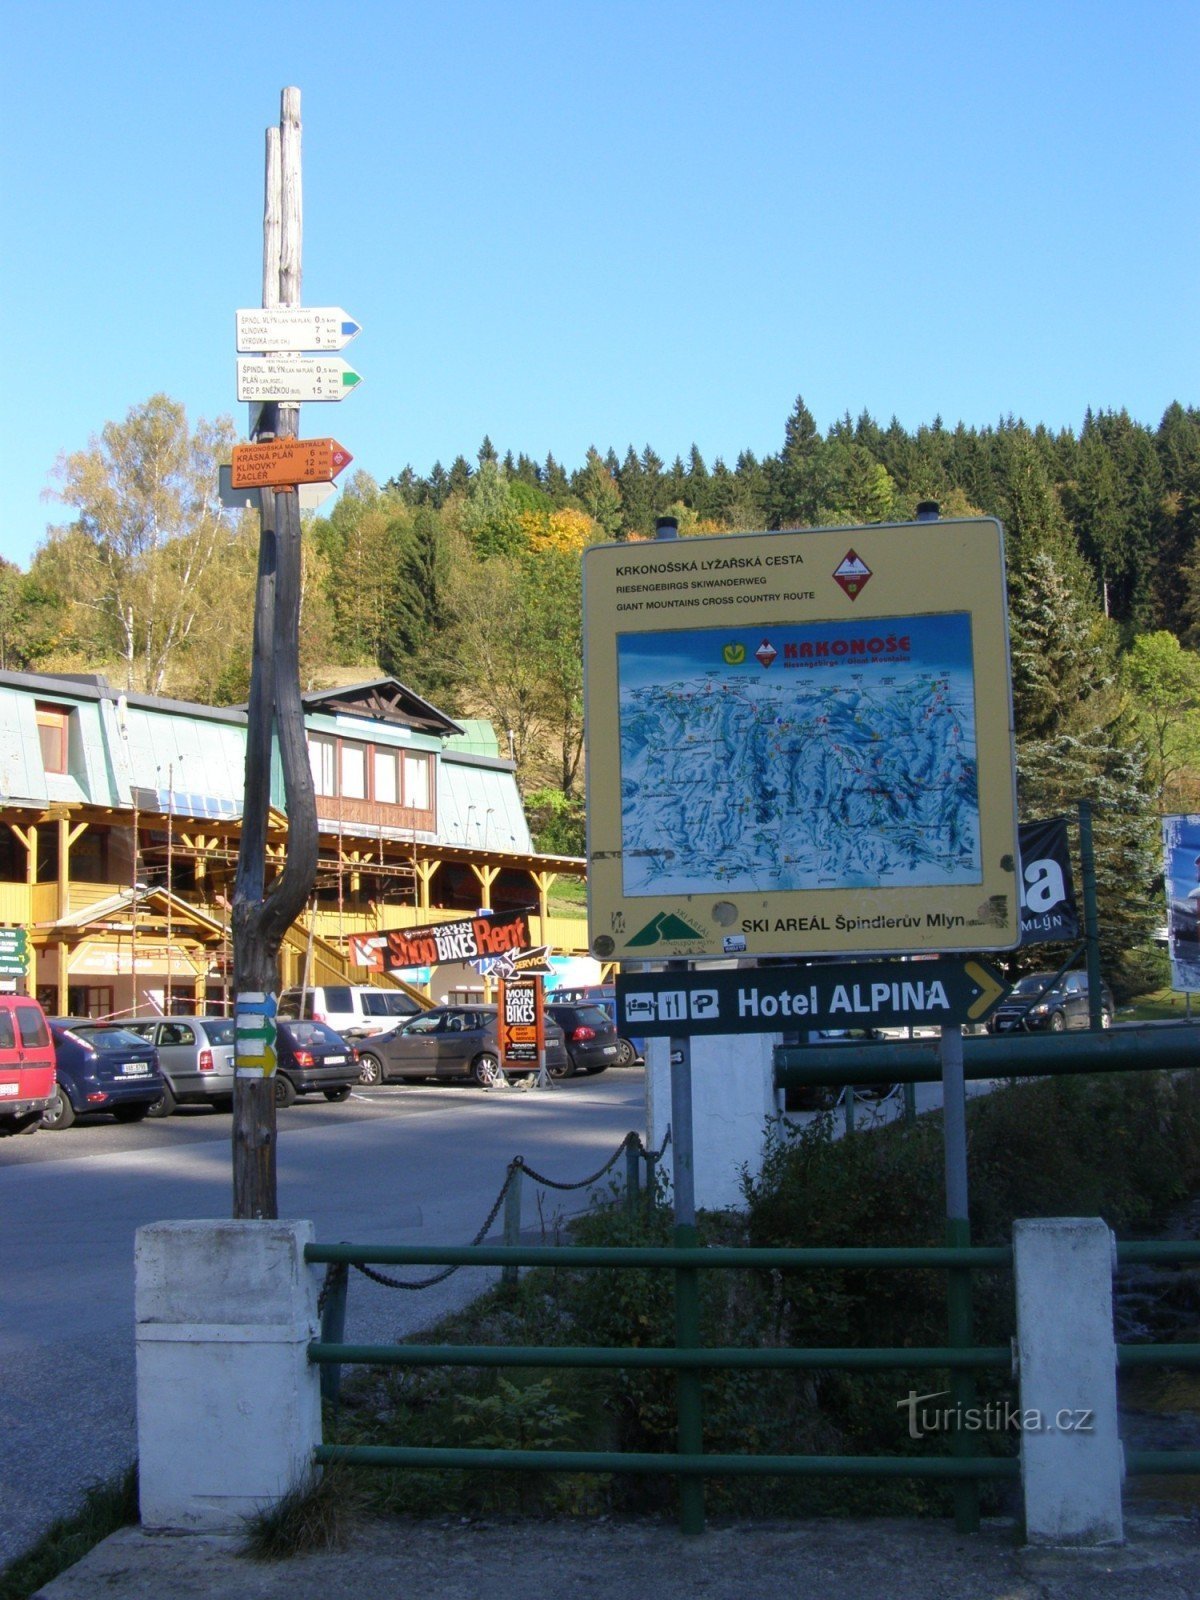 Špindlerův Mlýn turisztikai útkereszteződés - az információs központban